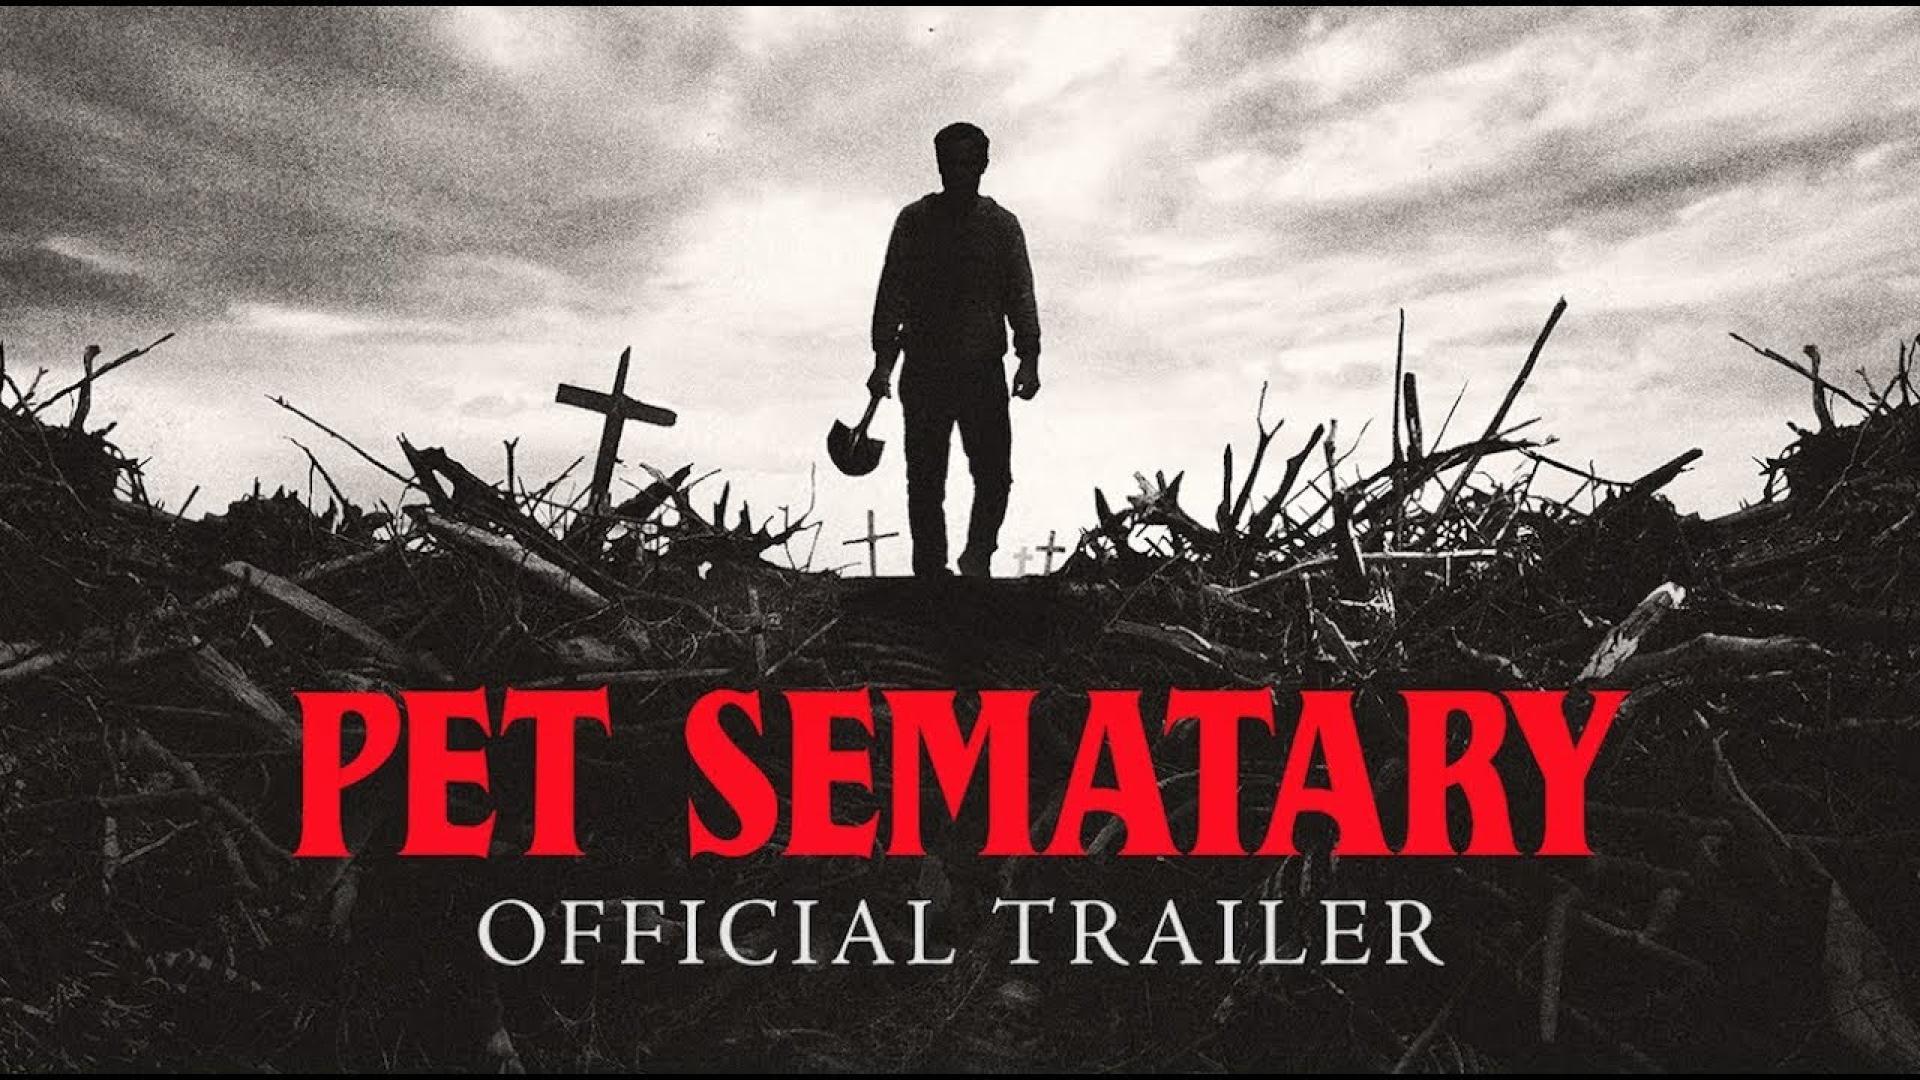 Új trailer és plakát érkezett a Kedvencek temetőjéhez